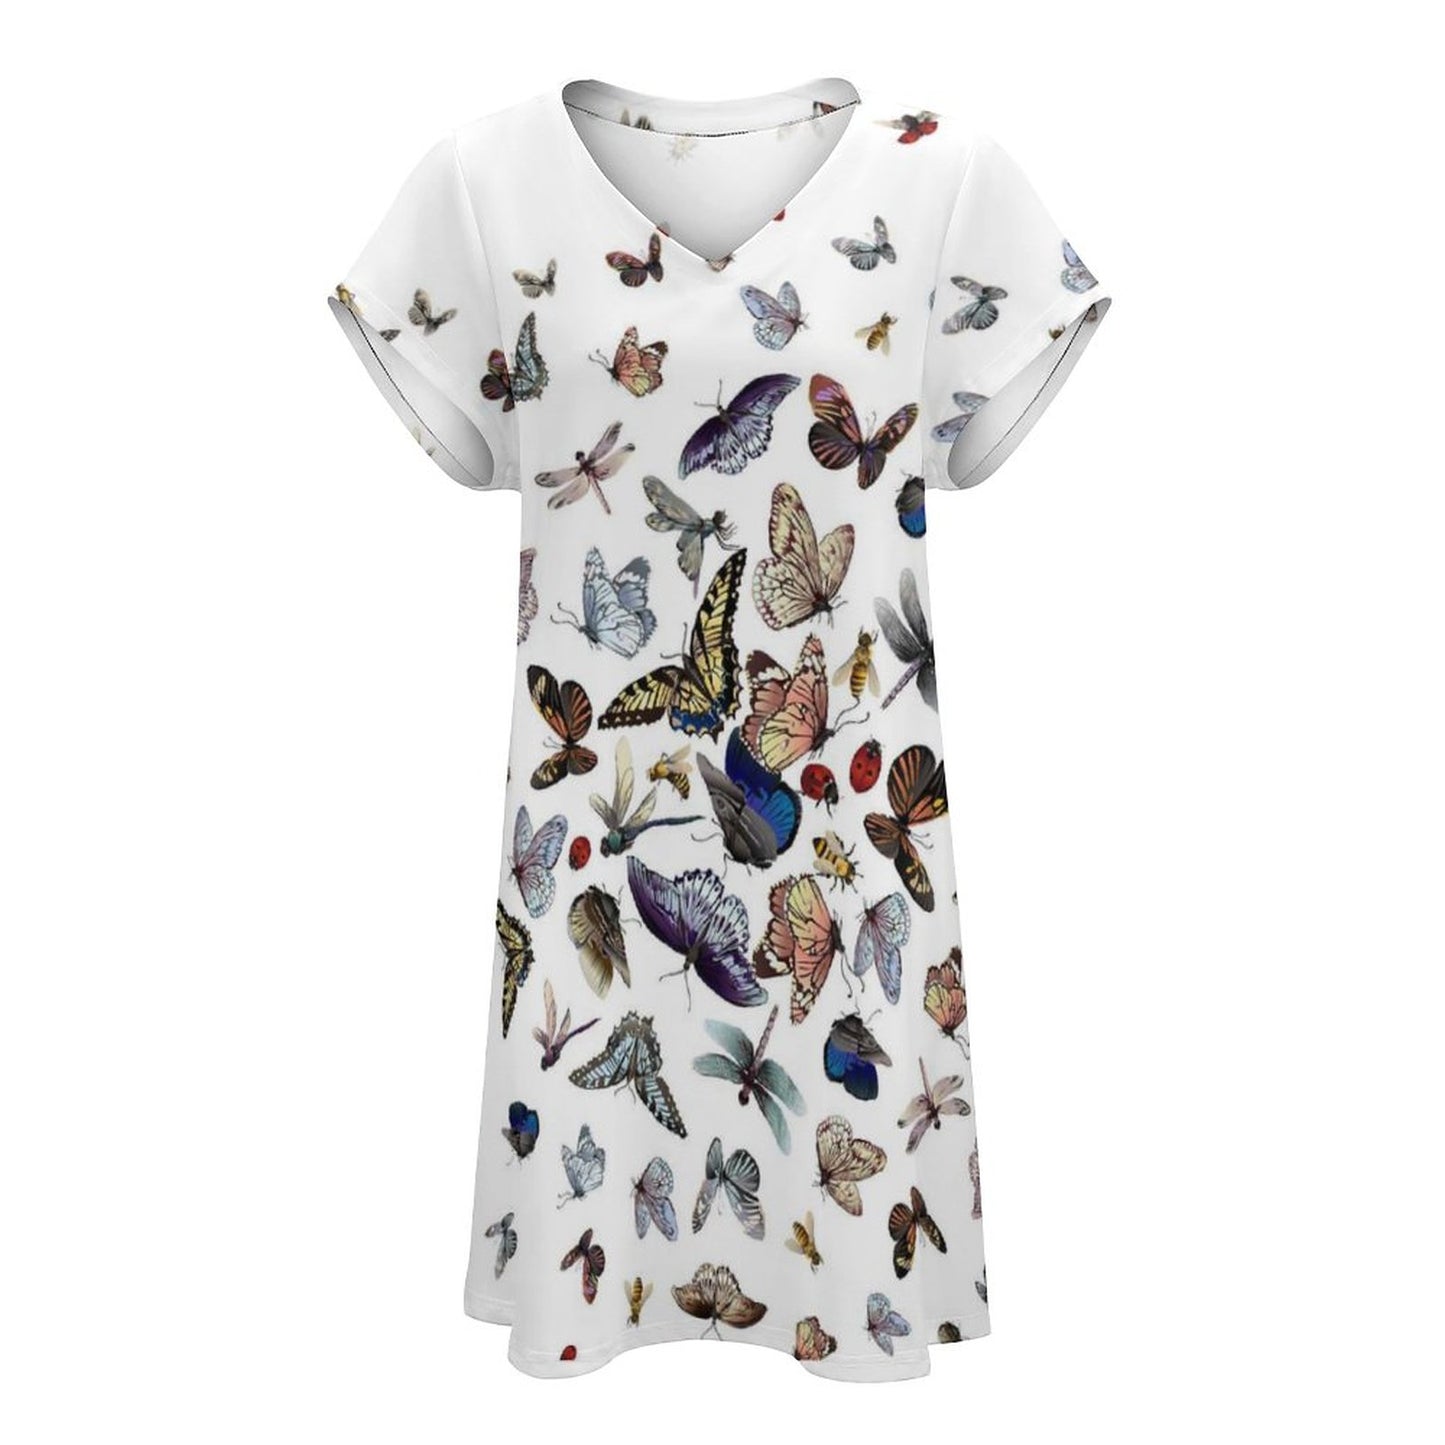 Online DIY Dress for Women V-neck Short Sleeve Skirt Butterfly Insect